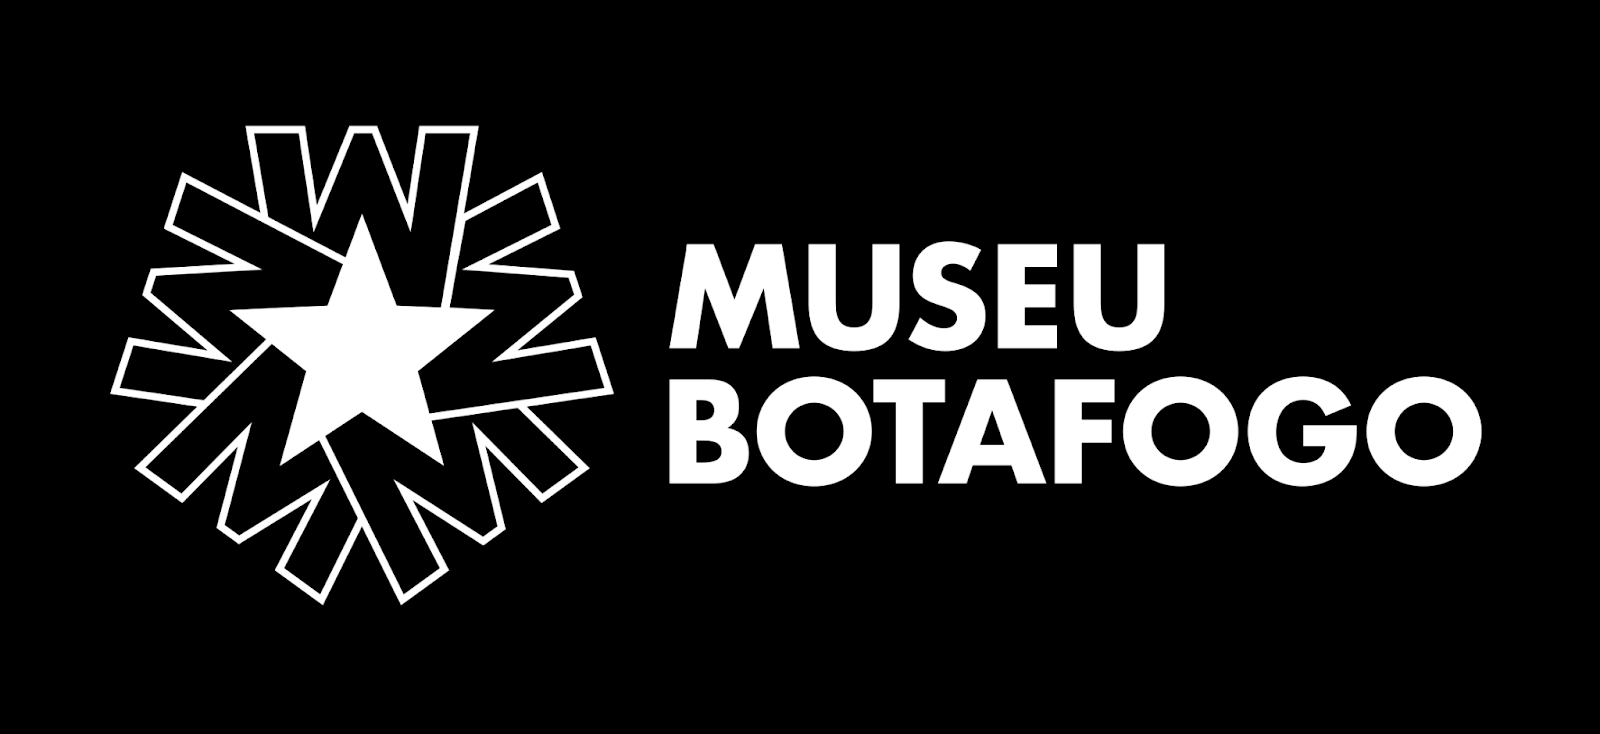 Museu Botafogo apresenta escultura de Garrincha, Farol da Estrela Solitária e anuncia início das obras